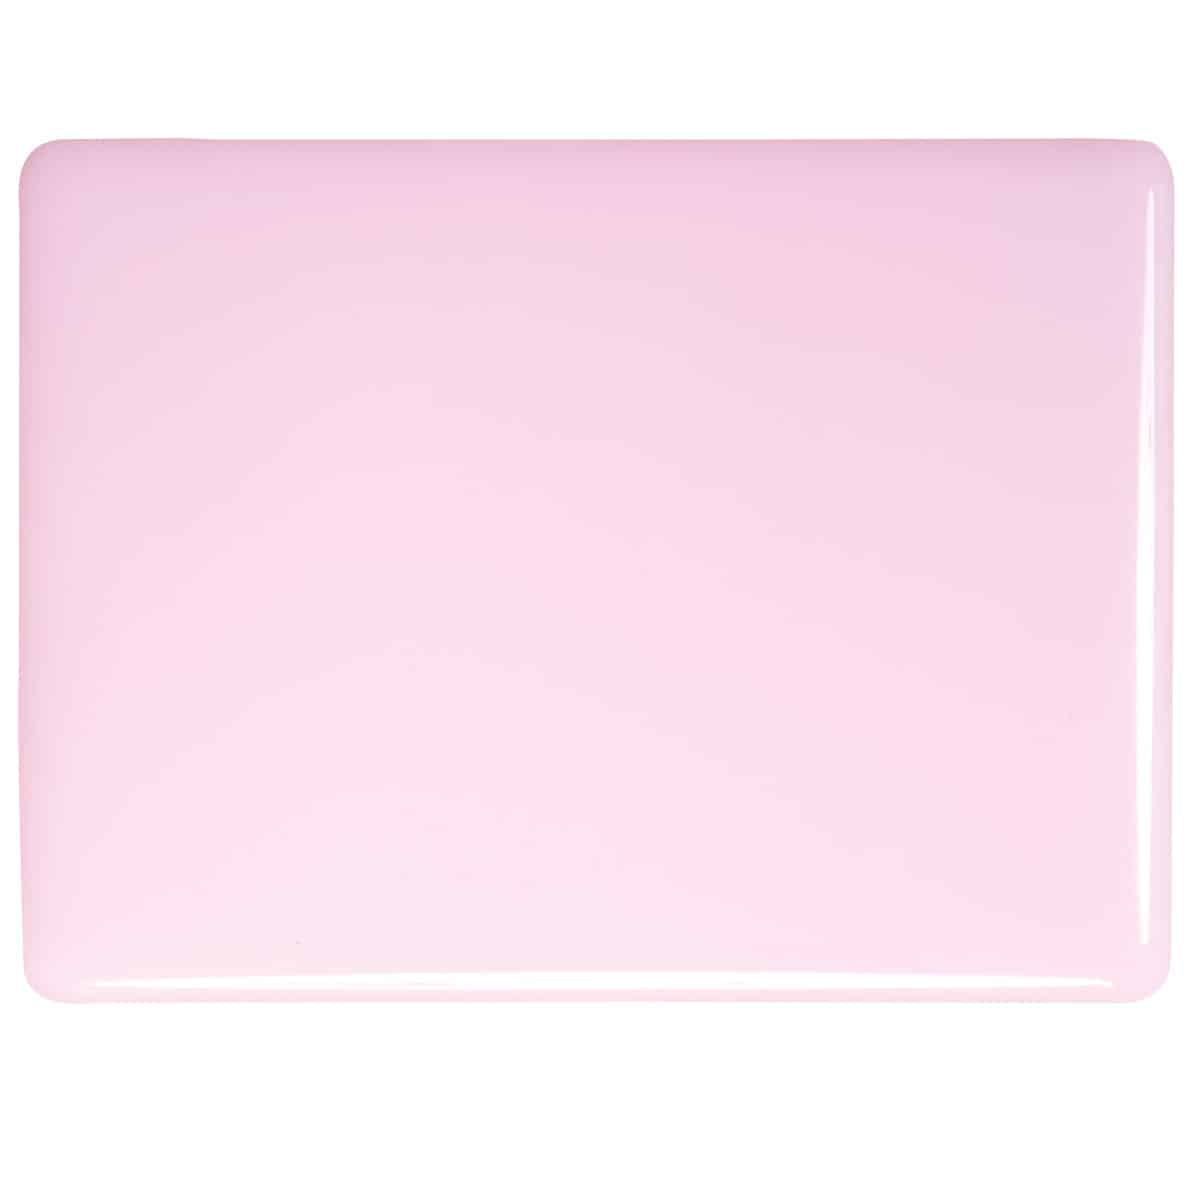 Petal Pink Opal sheet glass swatch